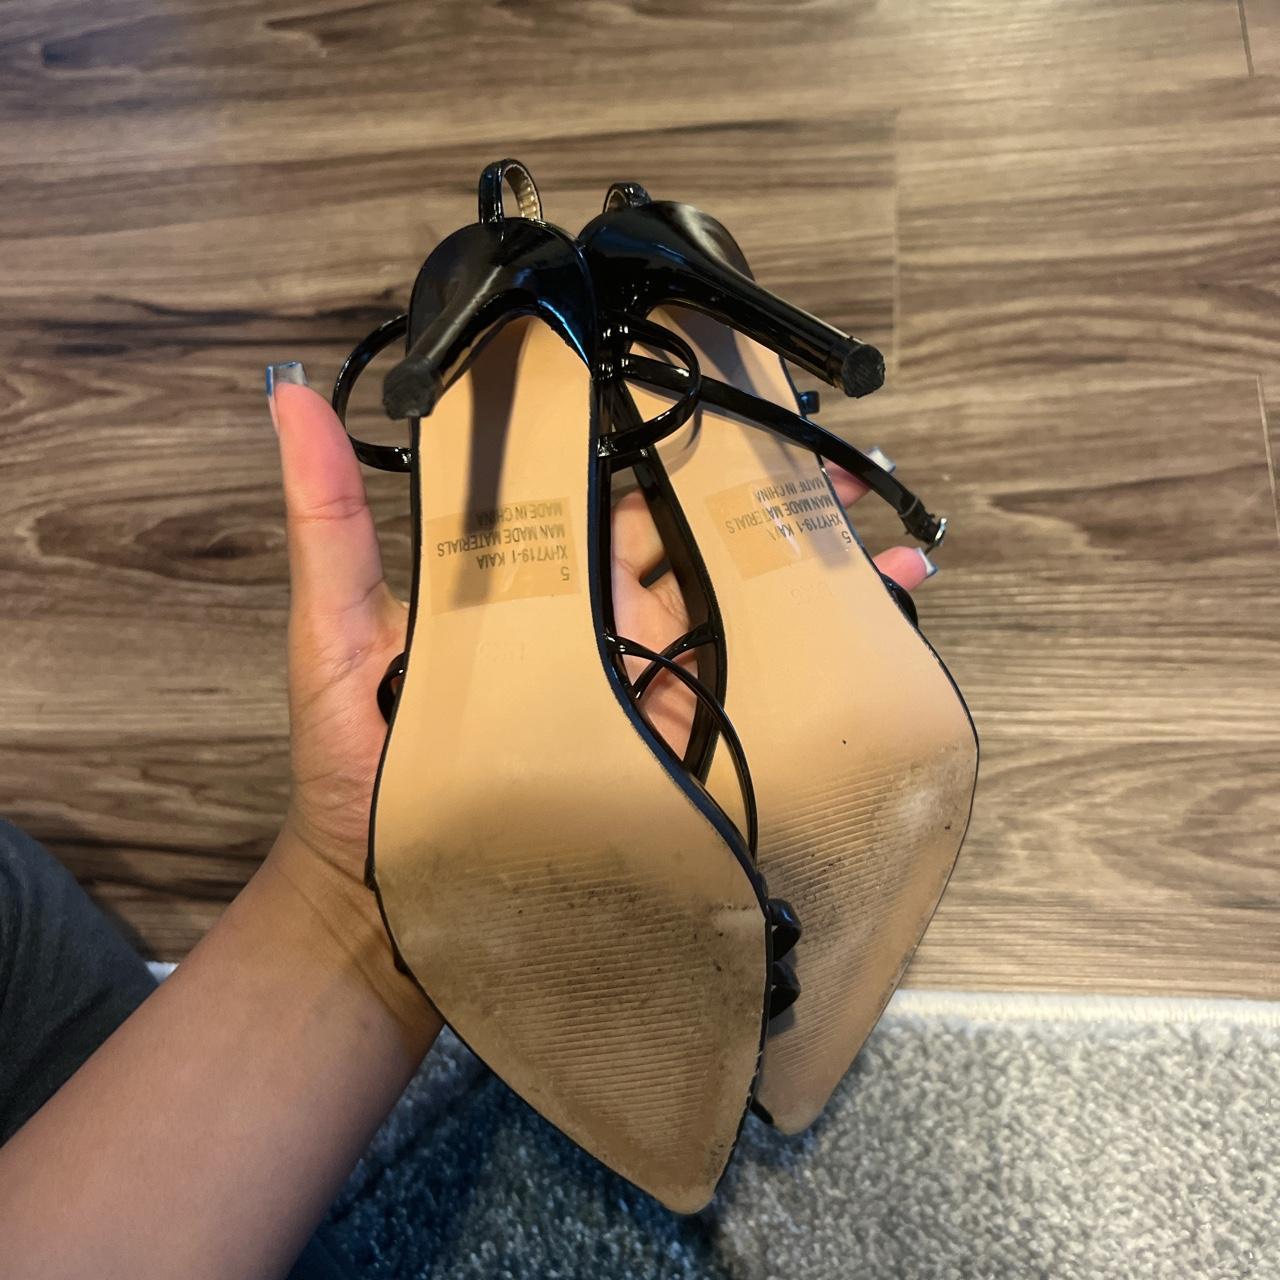 Product Image 4 - Black ego heels. UK size